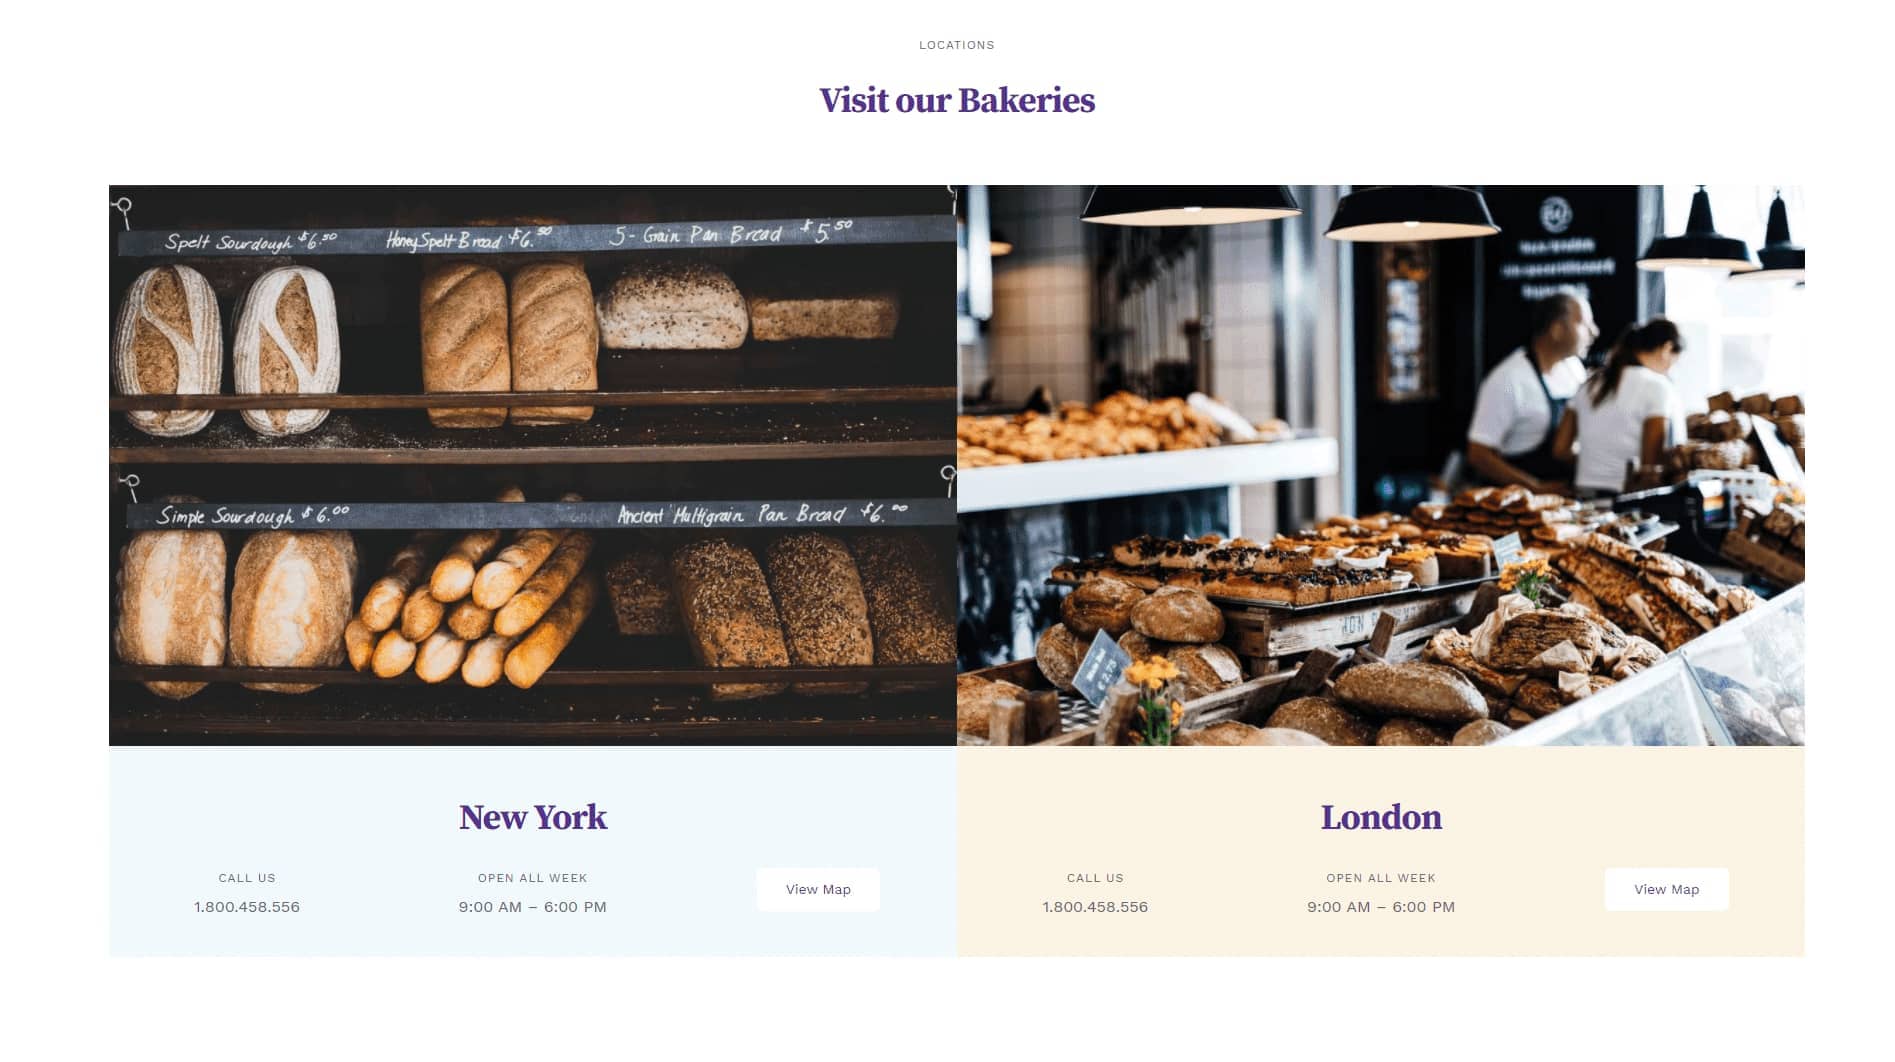 Avada Bakery Locations